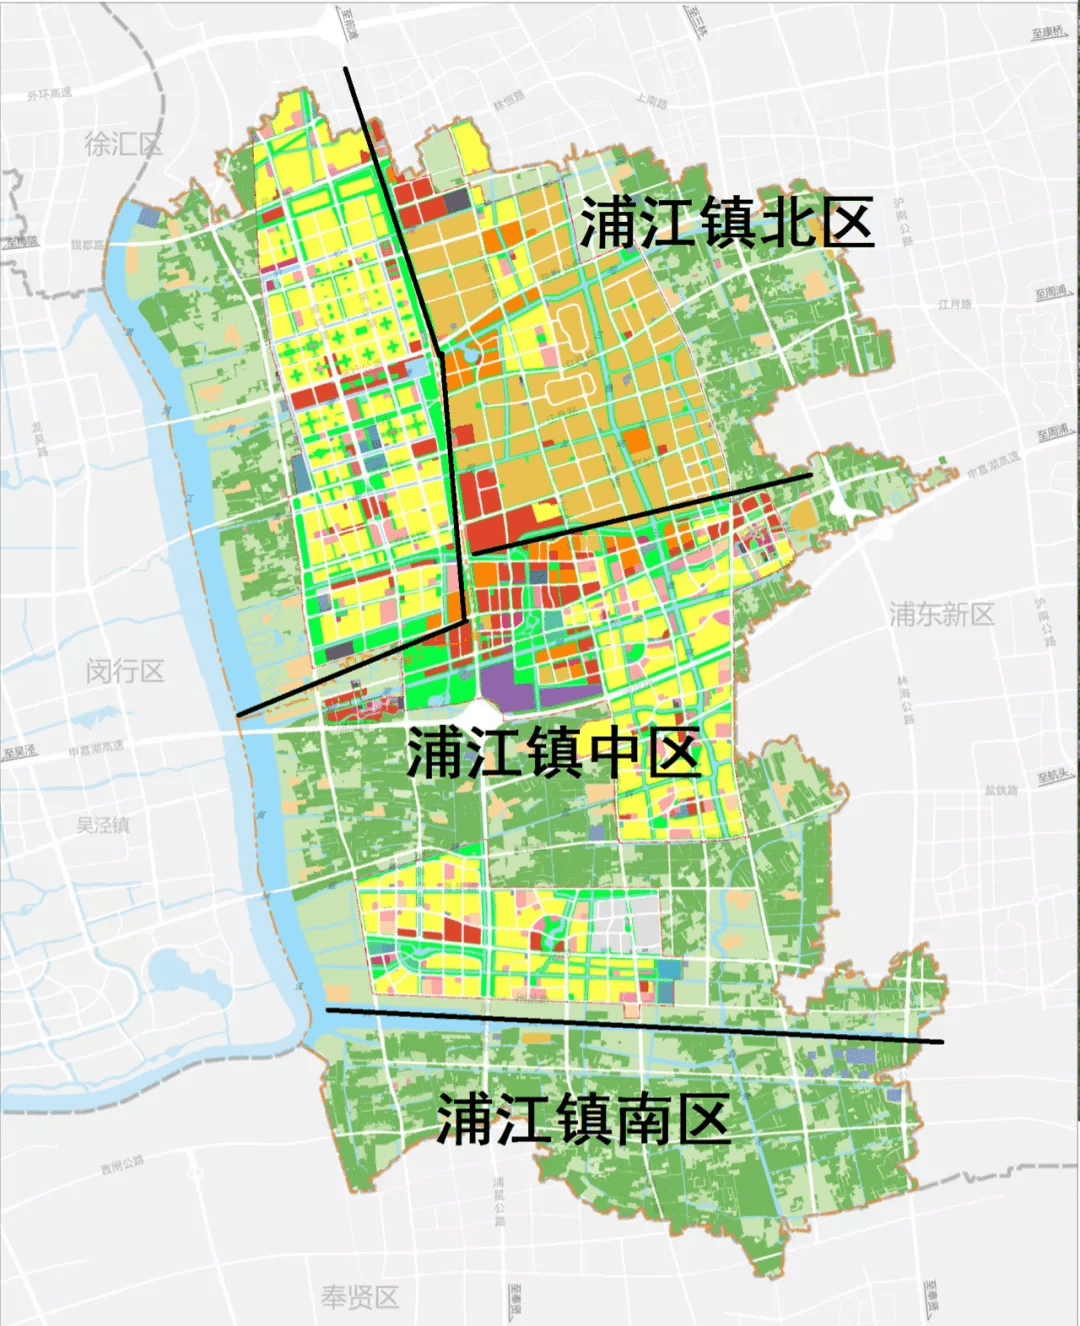 浦江镇(浦锦街道)地处闵行区东南部,处于上海版图的中心位置,与前滩